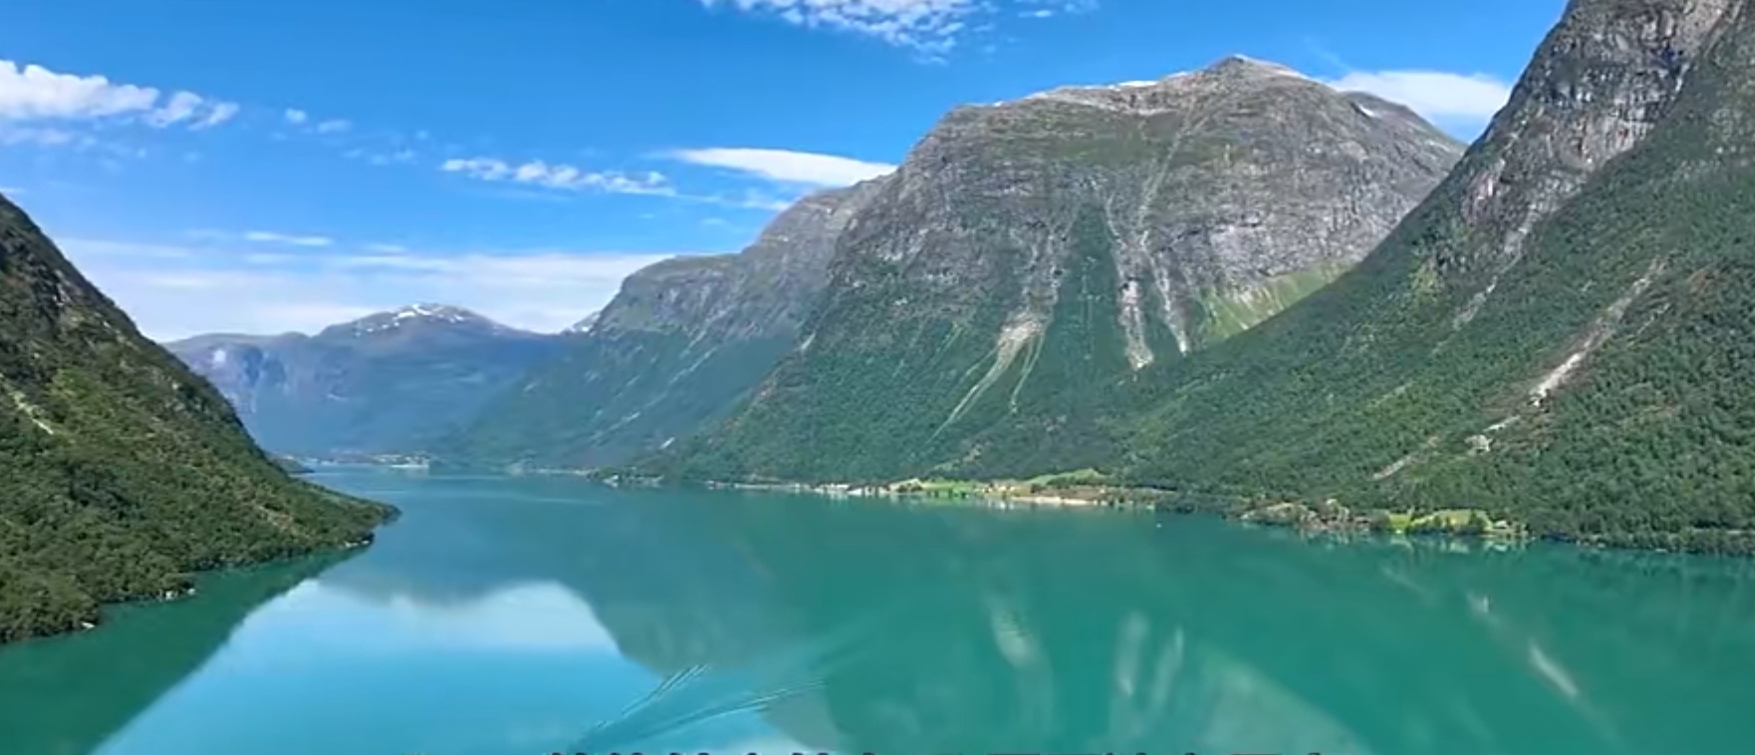 挪威山川绝美仙境